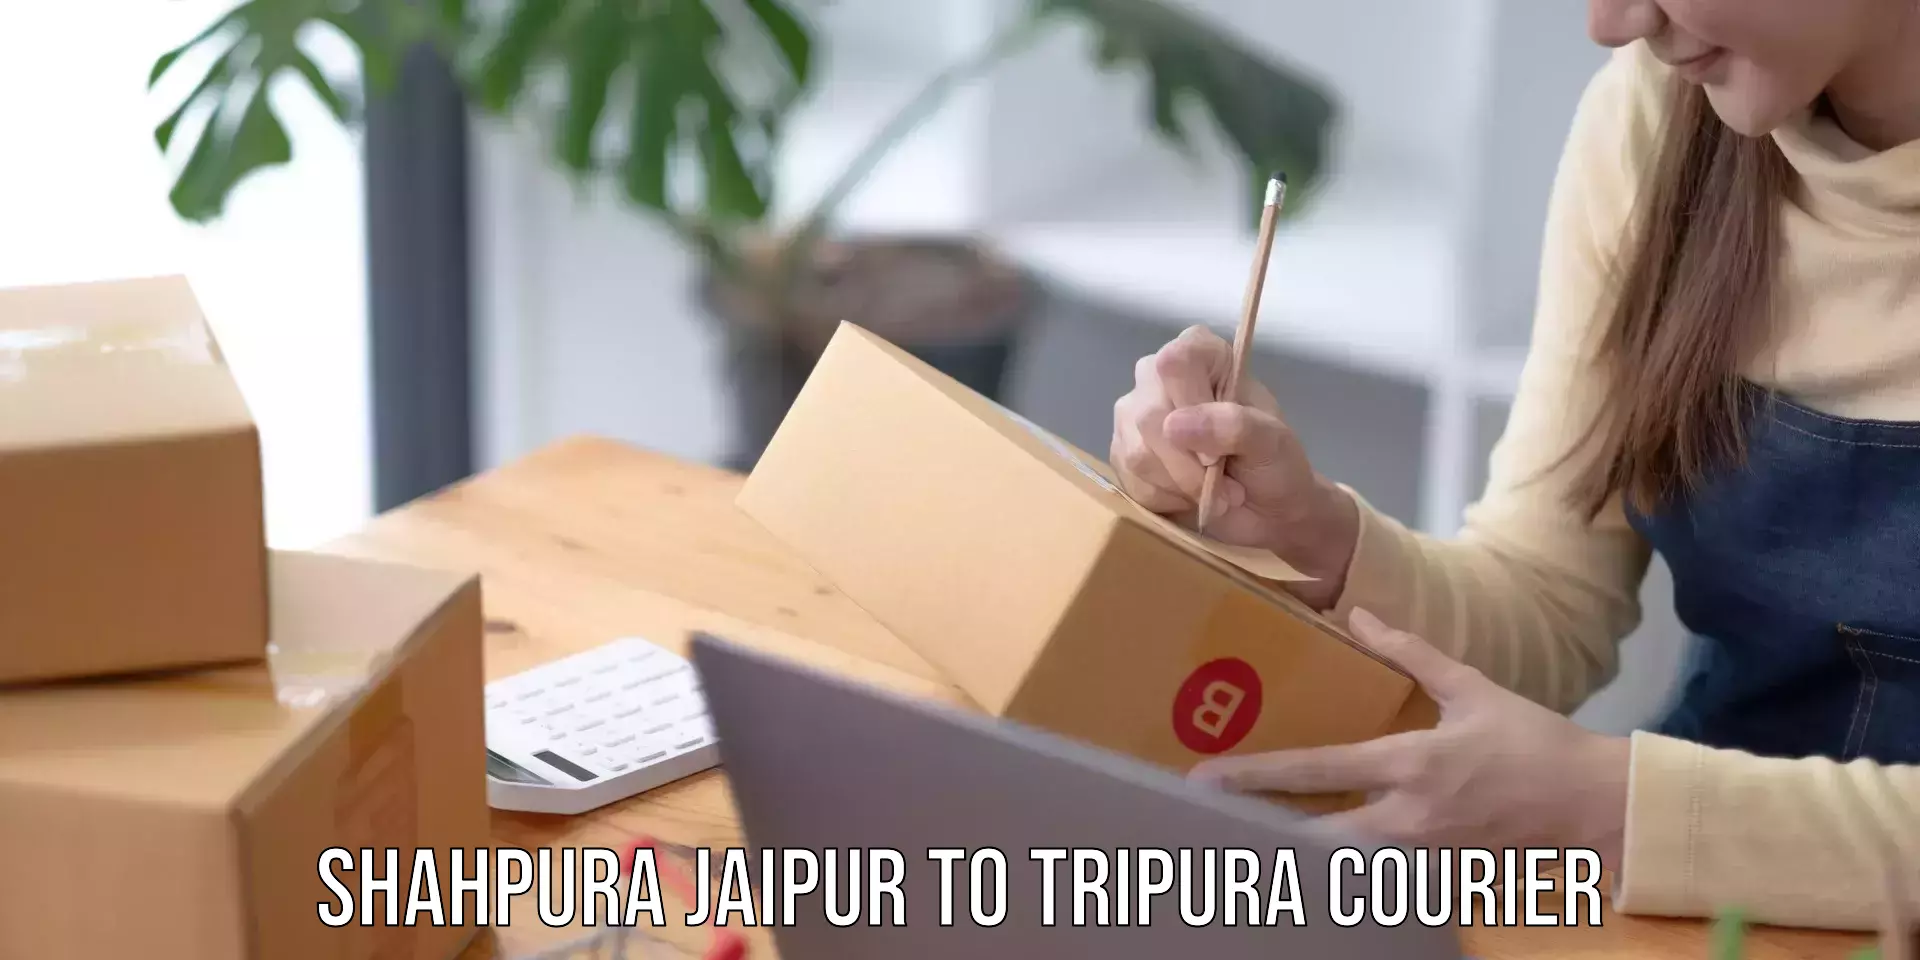 Courier service partnerships Shahpura Jaipur to Tripura